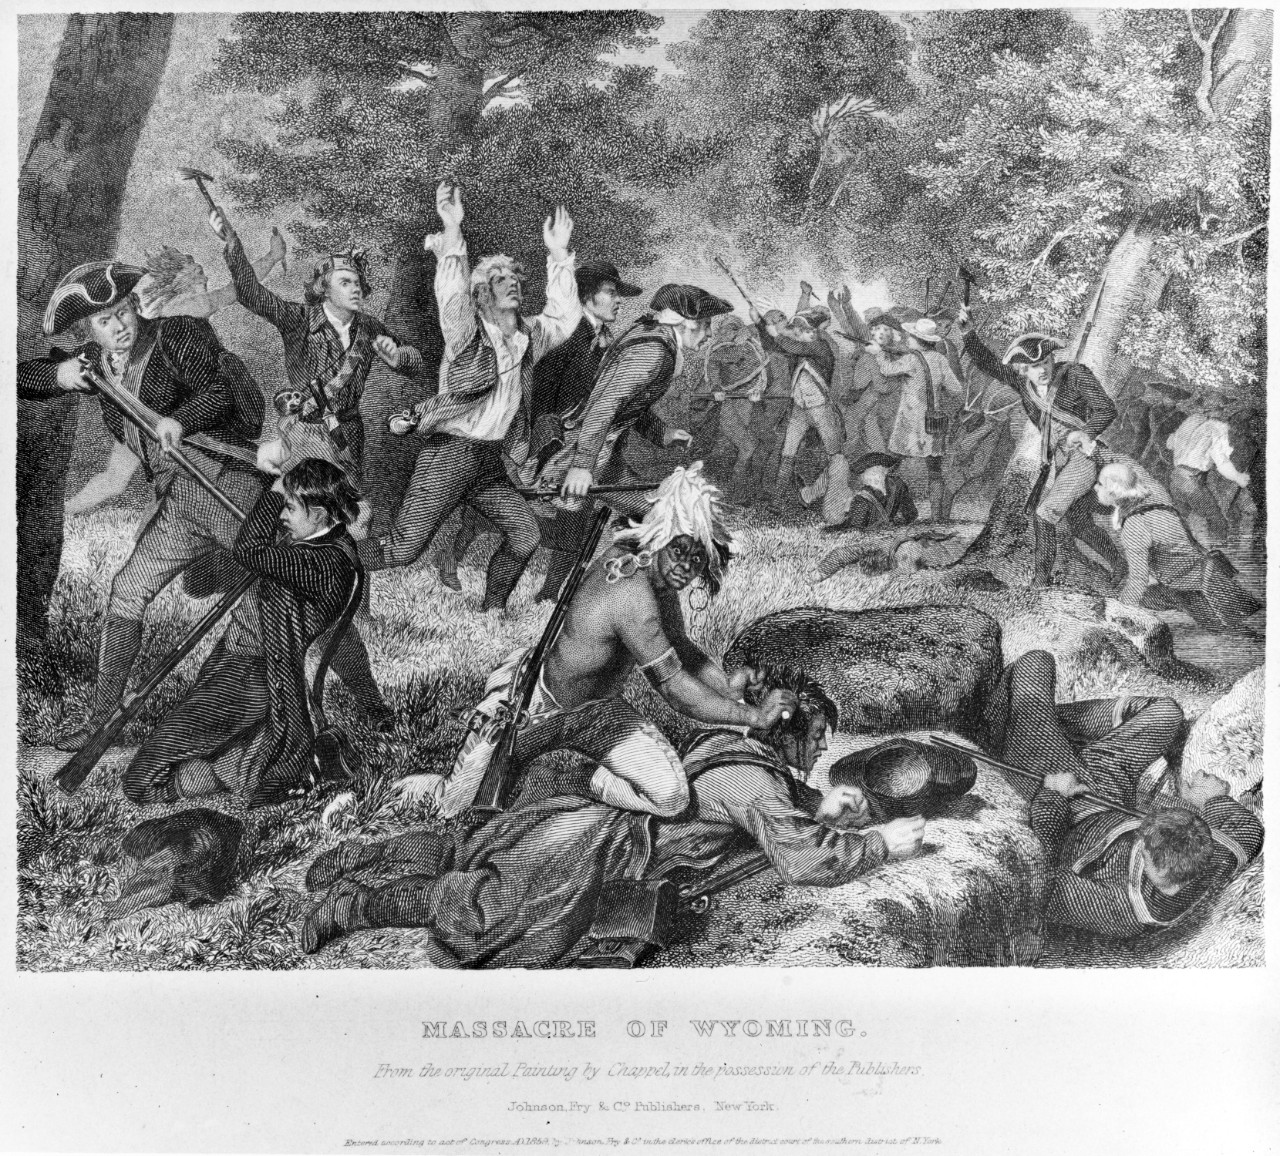 Massacre of Wyoming, 3-4 July 1778